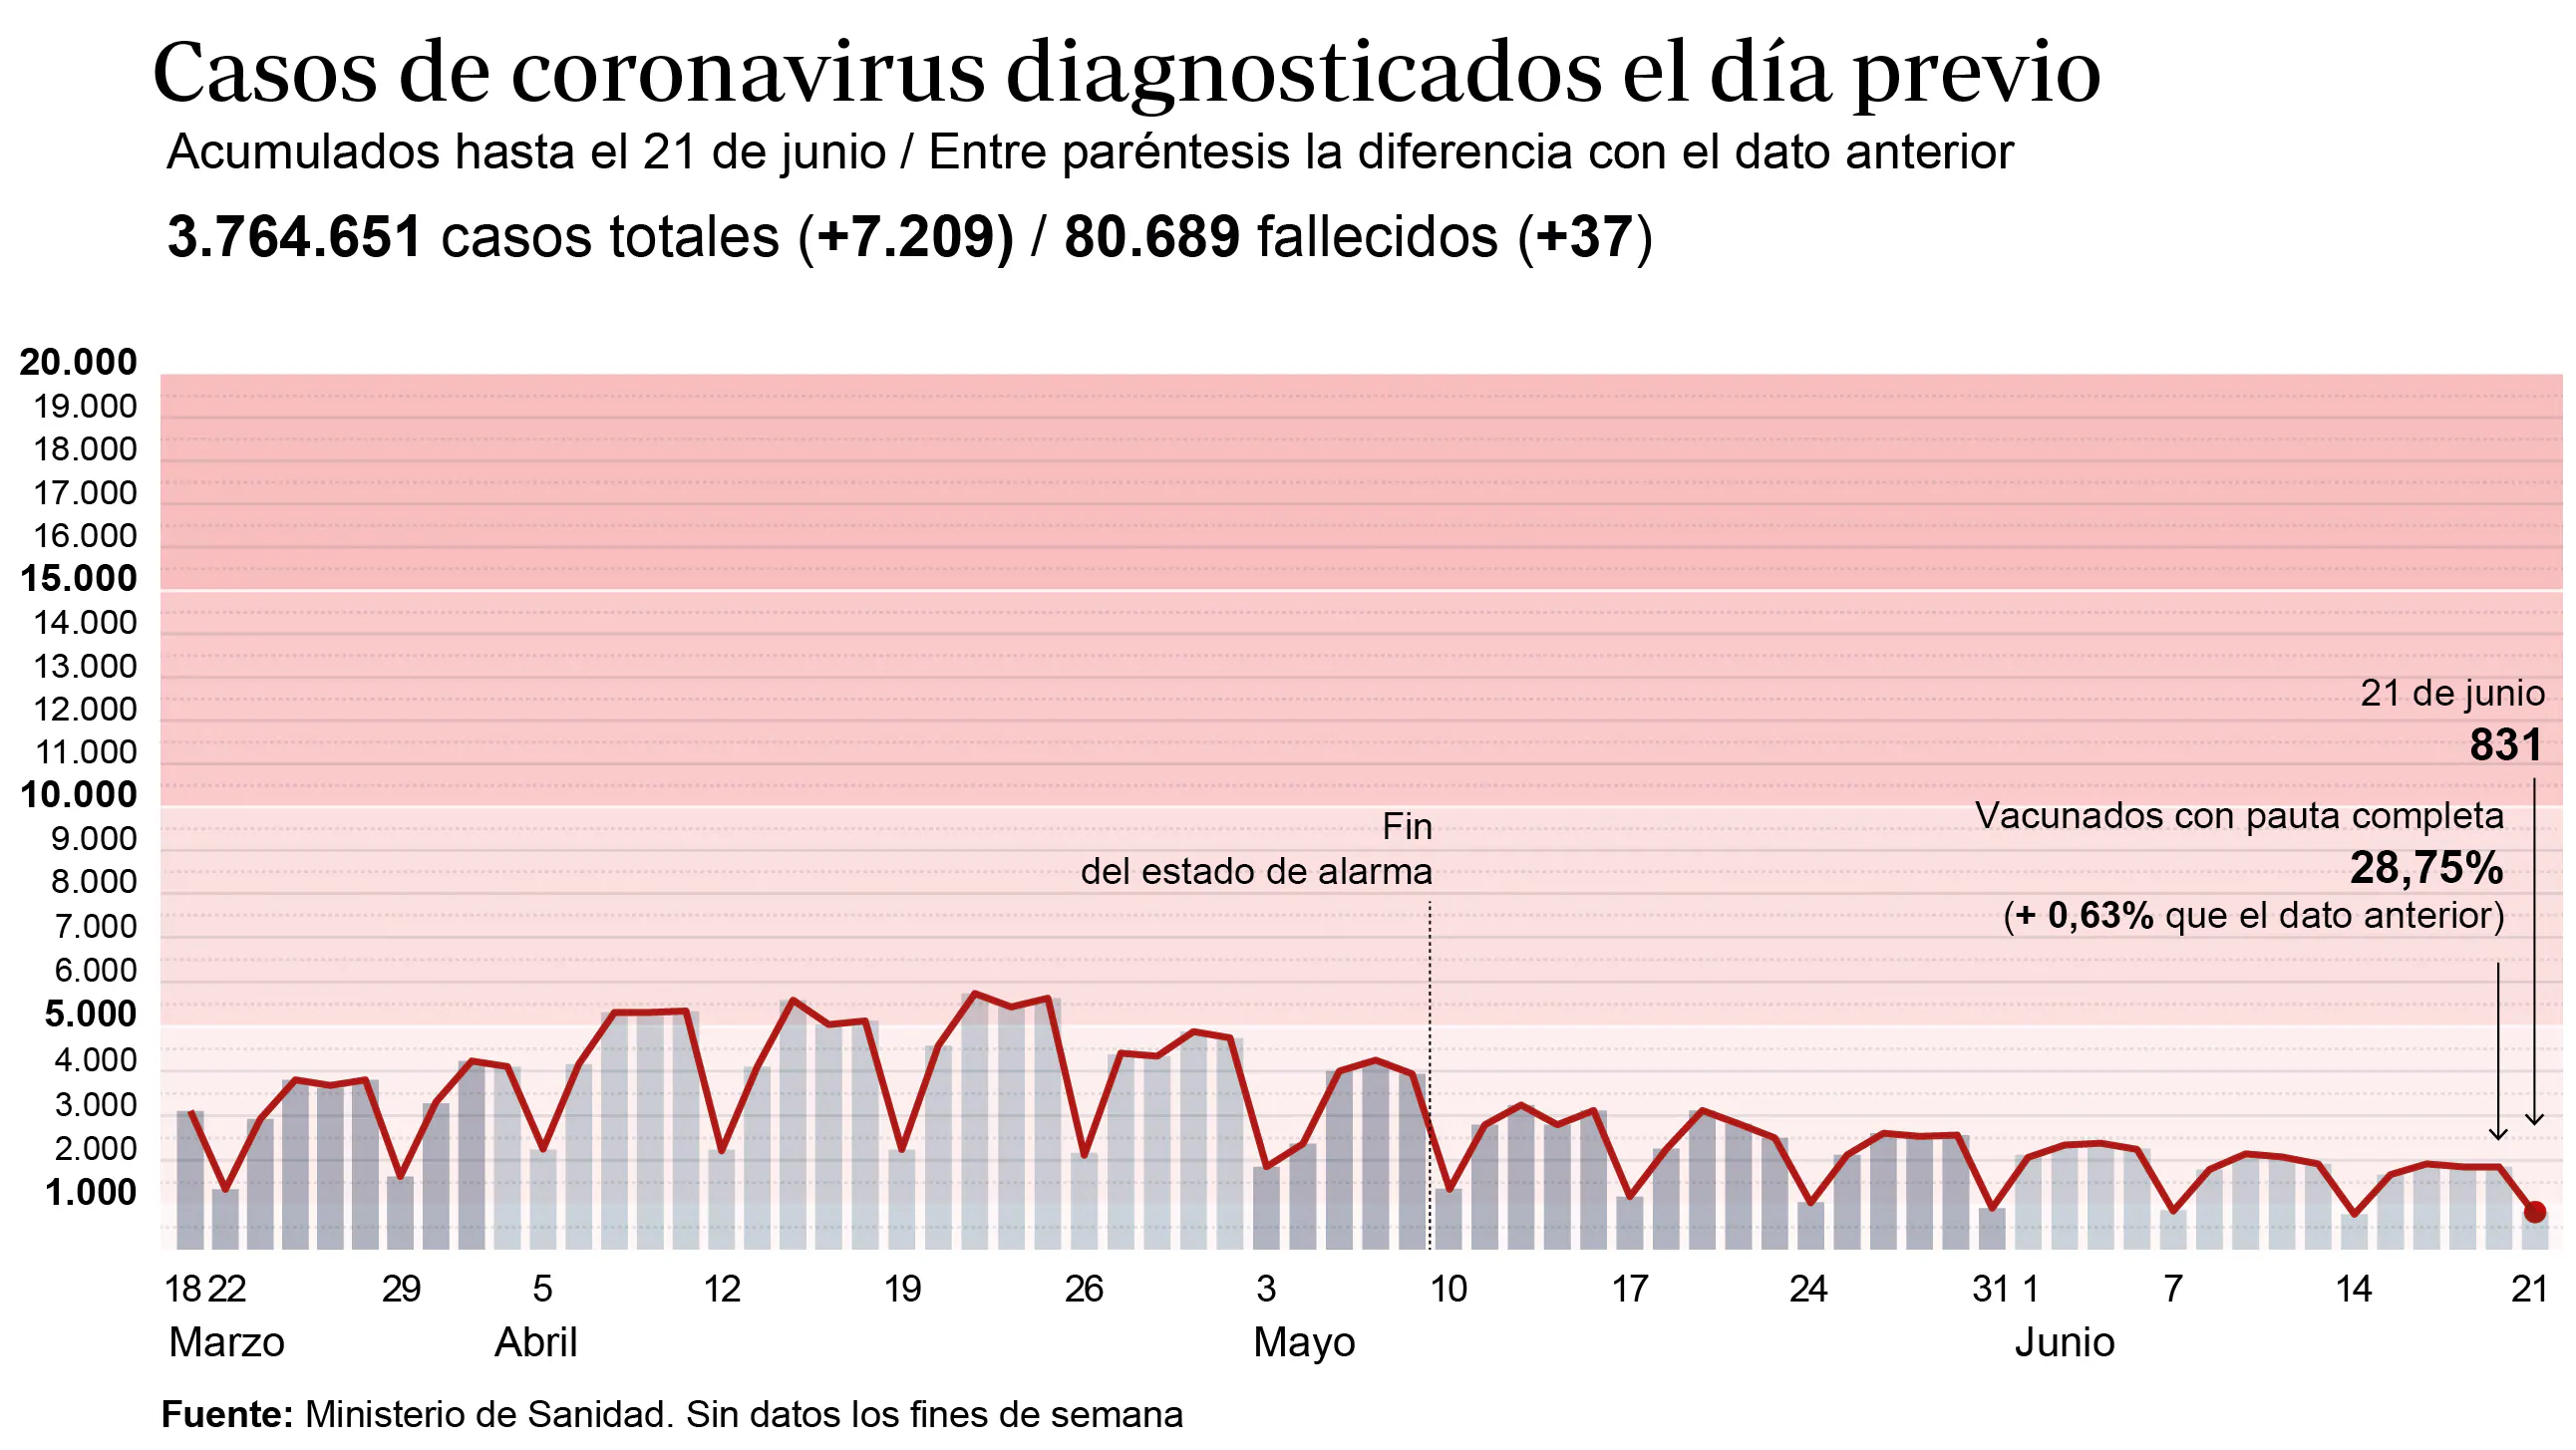 Gráfico que muestra la evolución de los contagios por coronavirus en España en los últimos meses